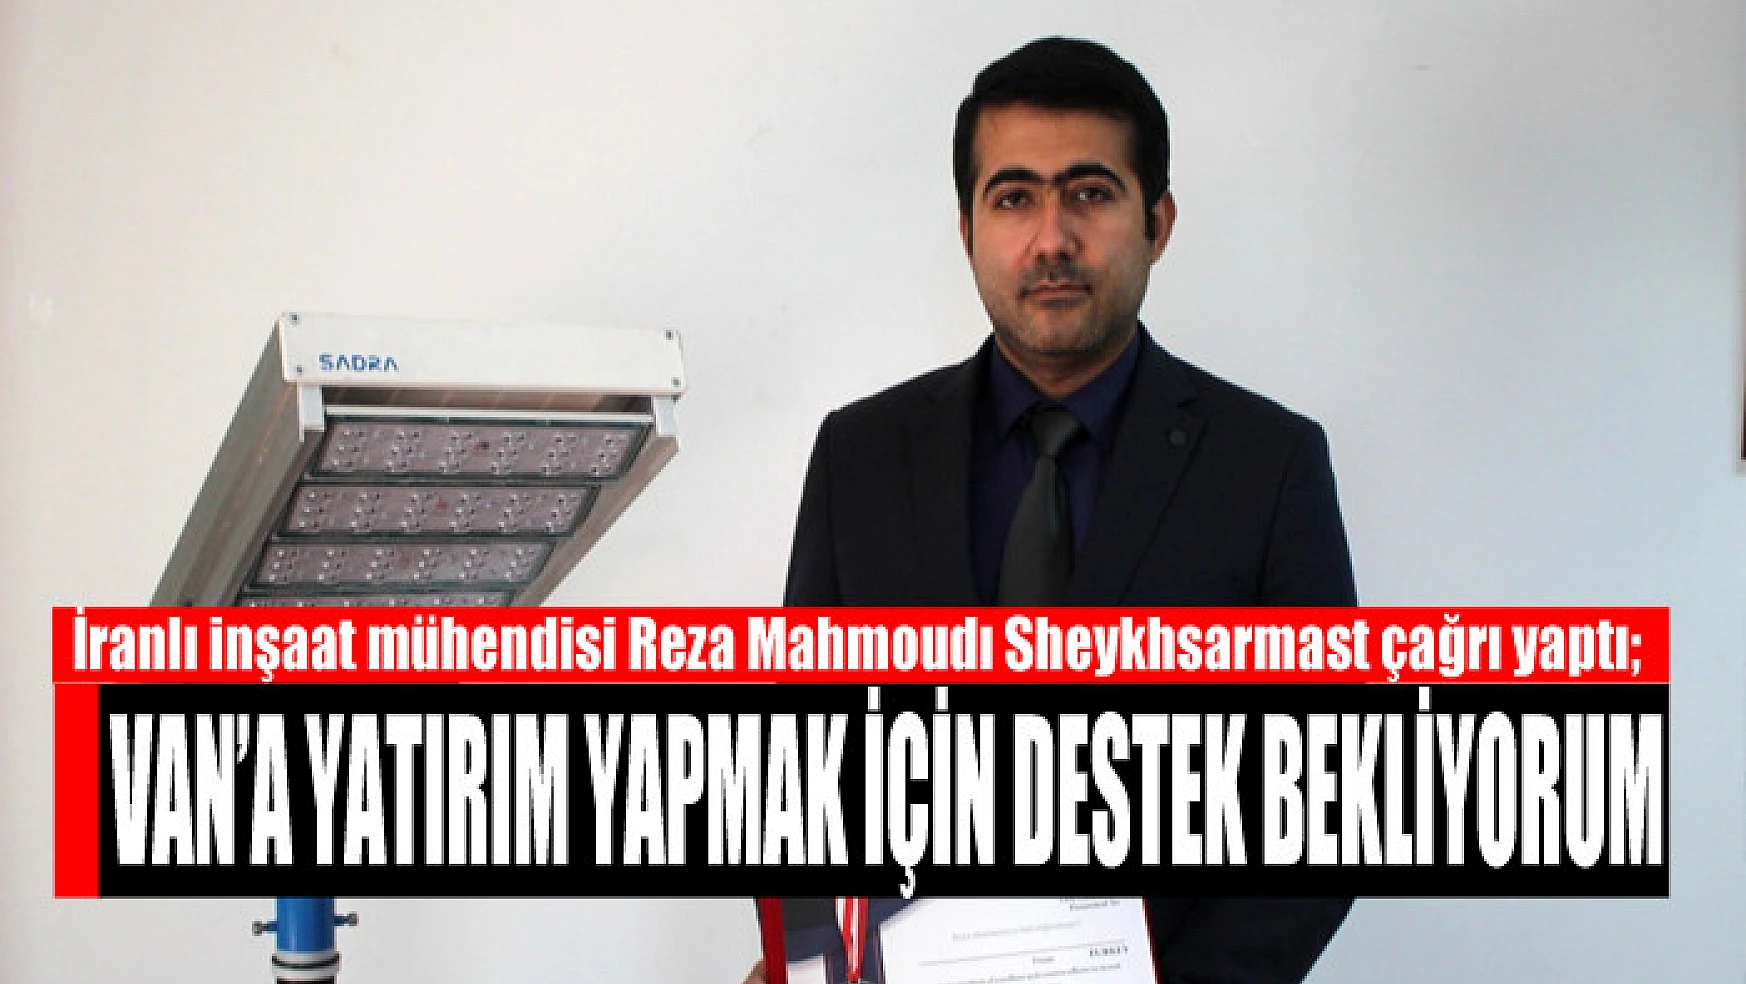 İranlı inşaat mühendisi Sheykhsarmast: Van'a yatırım yapmak için destek bekliyorum